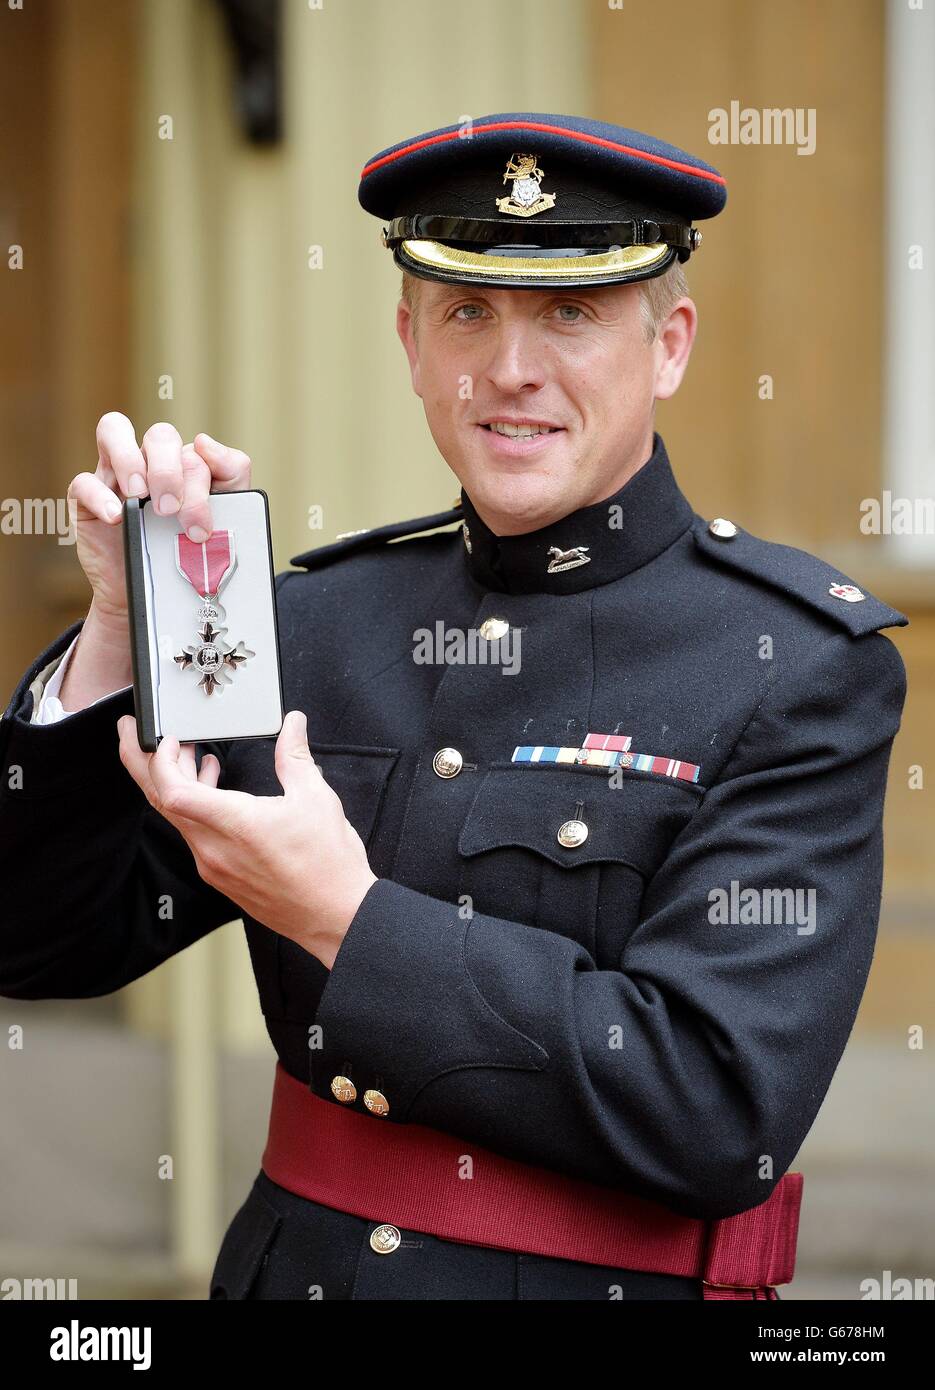 Major Edward Colver von OC Corunna Company, 3. Milliarde des Yorkshire Regiment, hält seine MBE-Medaille, nachdem er die Auszeichnung vom Prince of Wales während einer Investiturzeremonie im Buckingham Palace im Zentrum von London erhalten hatte. Stockfoto